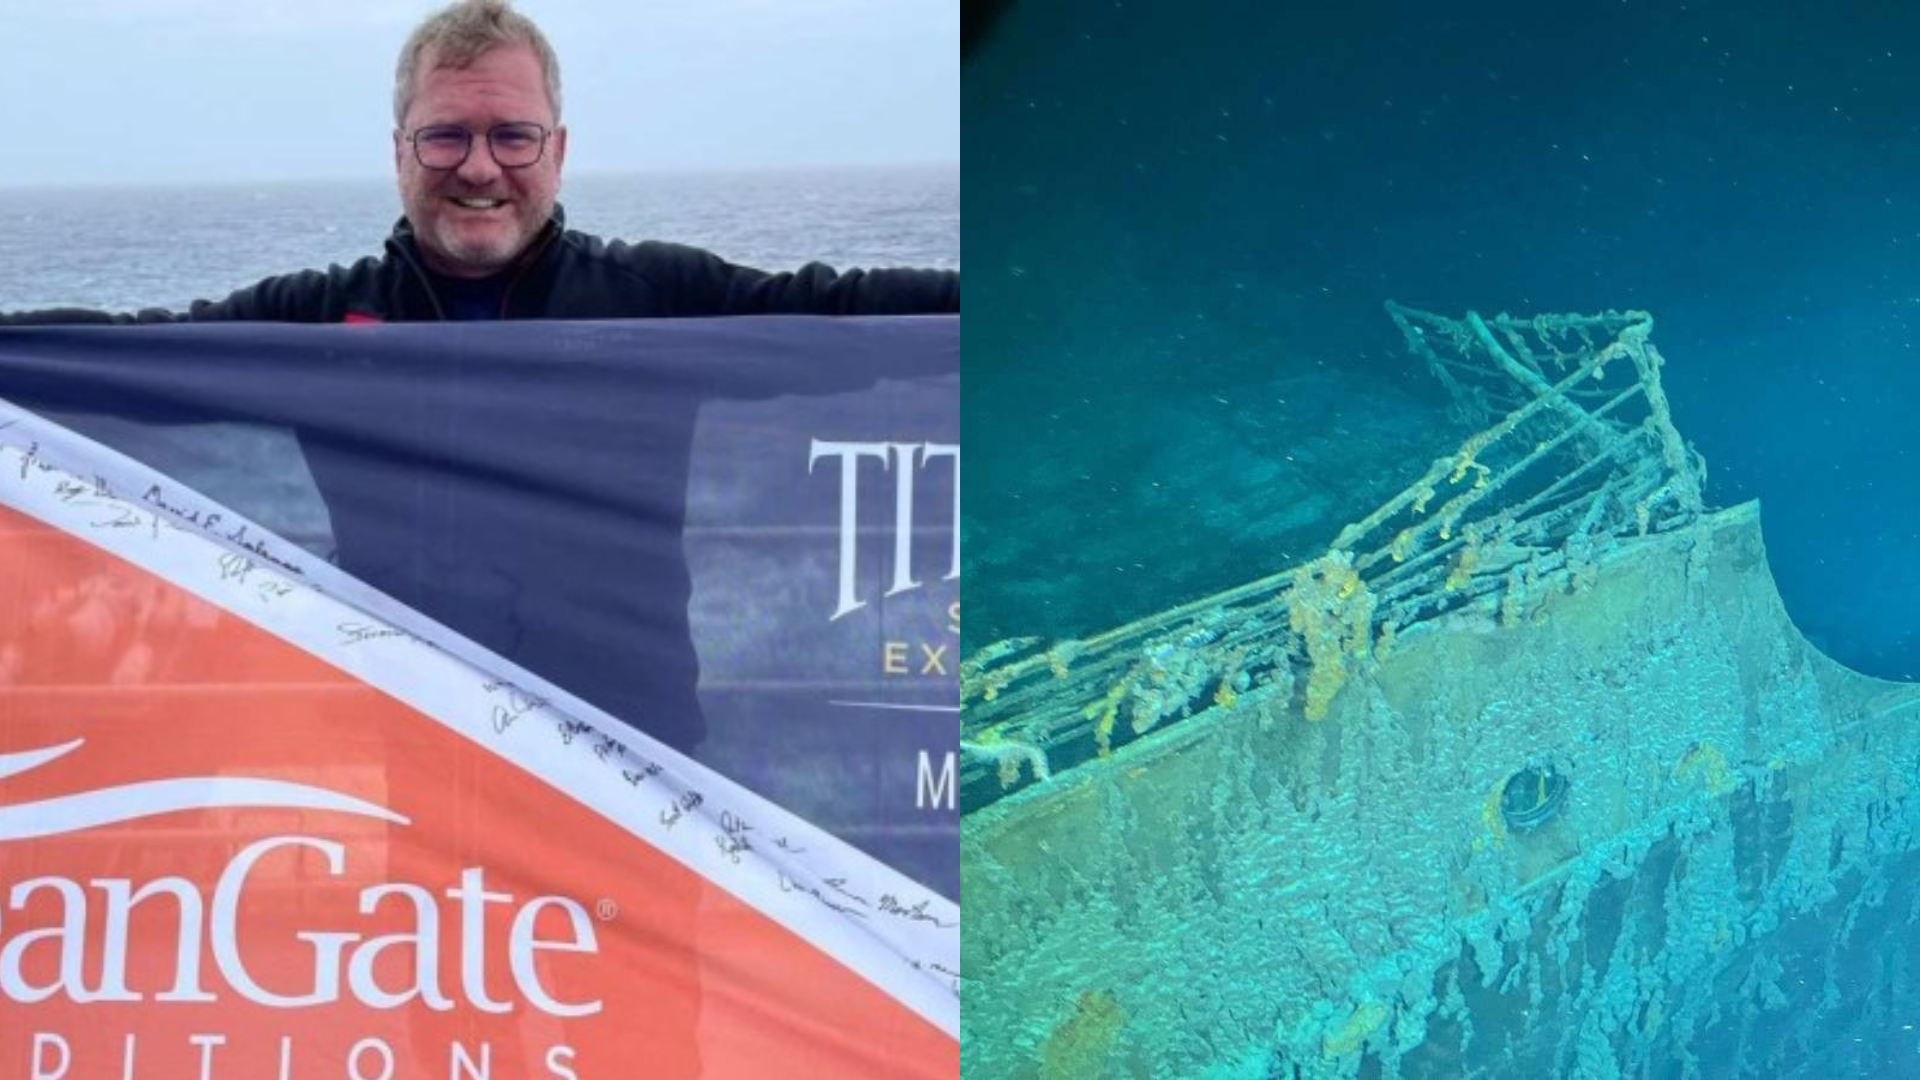 Alemão compartilha fotos do Titanic em viagem feita no Titan, e detalha experiência: ‘Muito desconfortável’